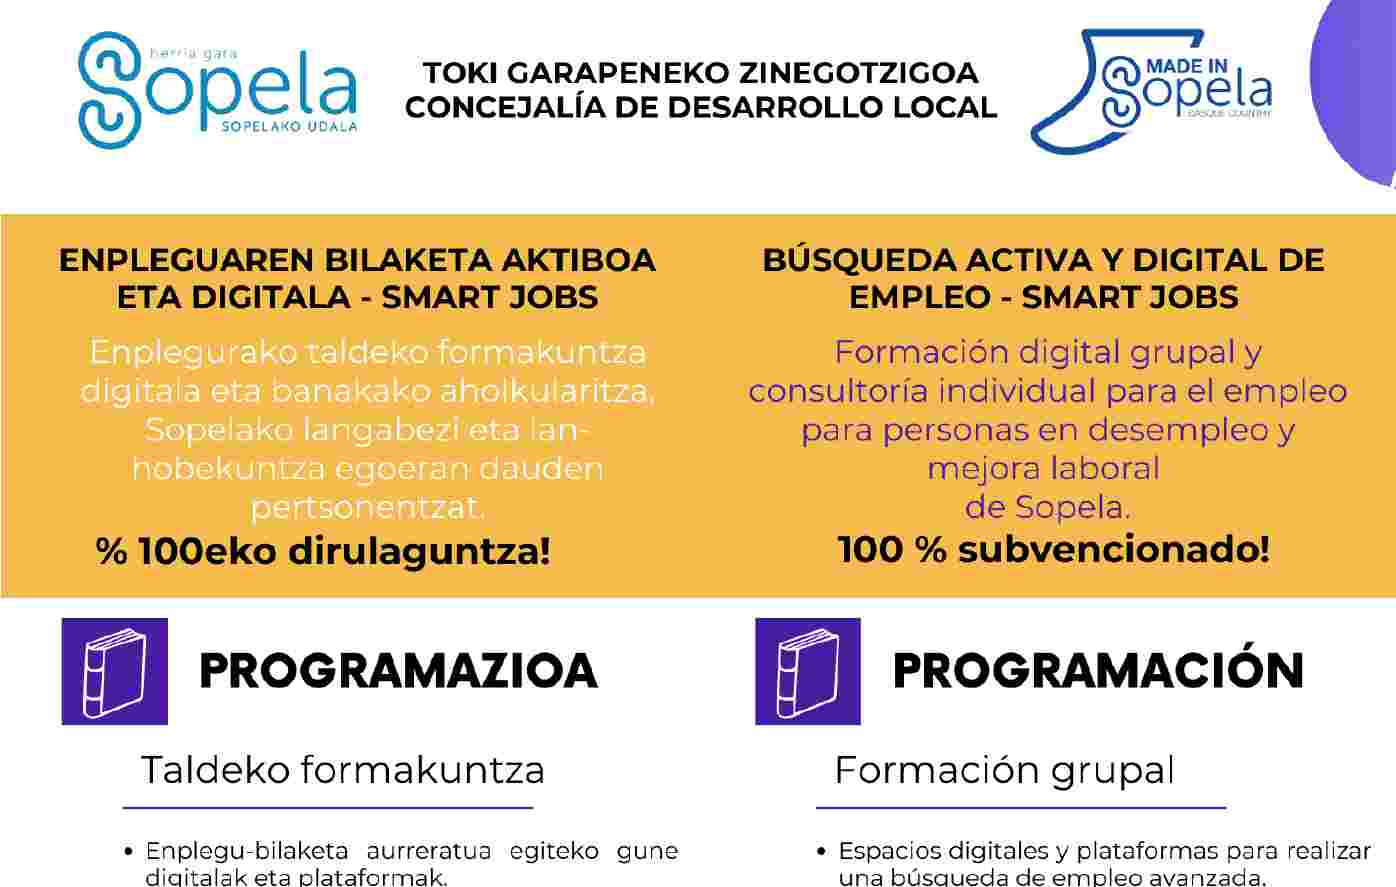 Toma las riendas de tu futuro laboral: ¡Únete a nuestra Búsqueda Activa de Empleo SMART JOBS en Sopela!